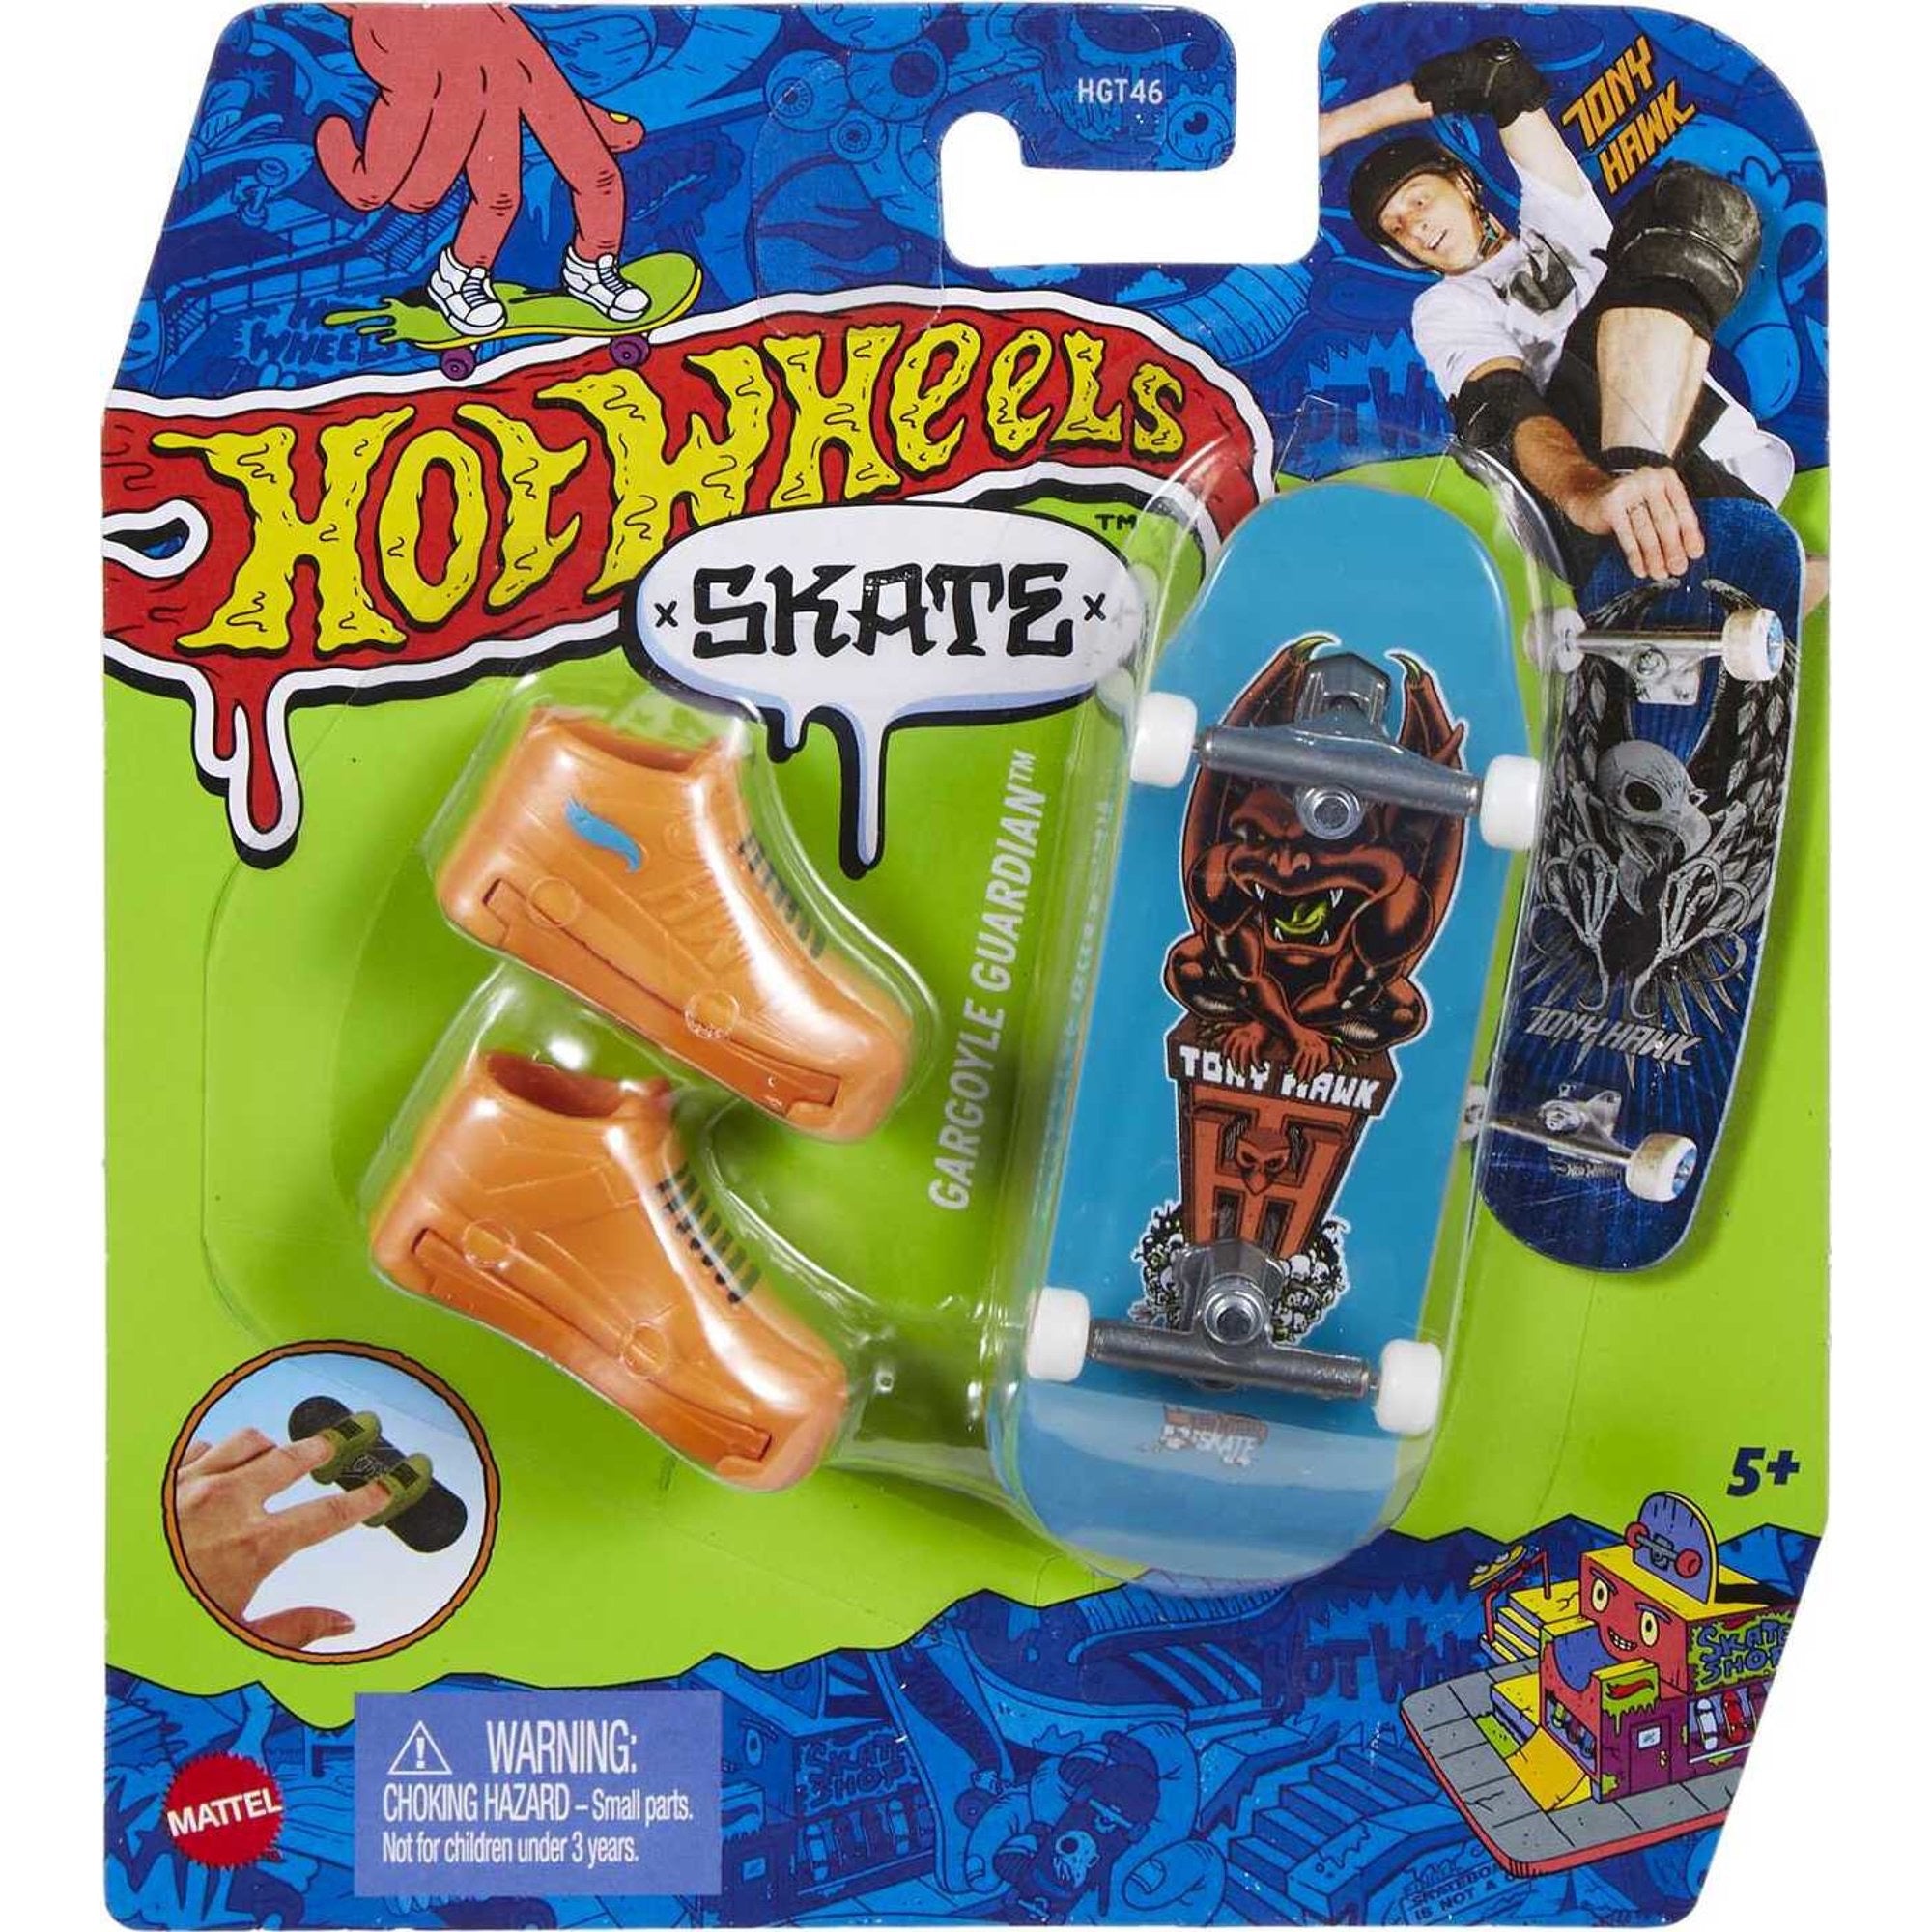 Hot Wheels Skate Tony Hawk Fingerboard & Skate Shoes - Gargoyle Guardian by Mattel #HNG21